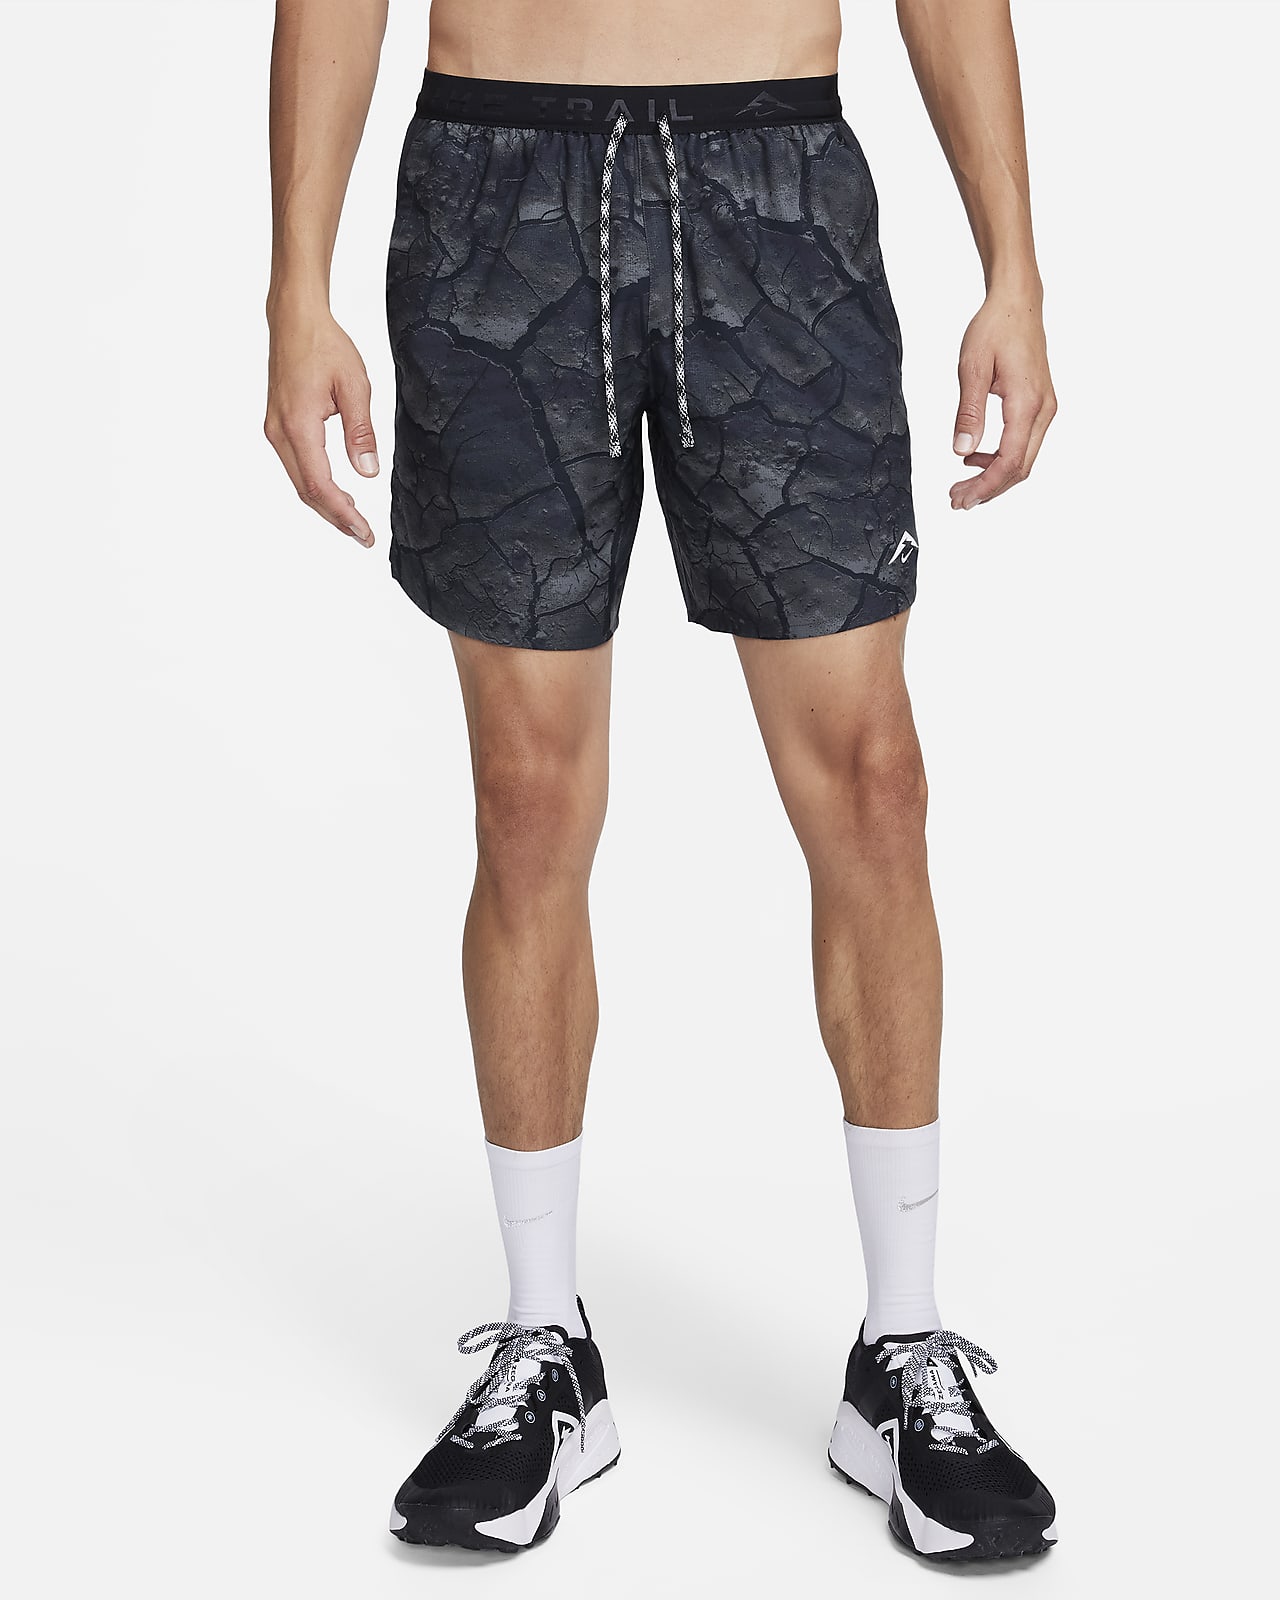 Nike Dri-FIT Stride Pantalons curts estampats amb eslip incorporat de 18 cm de running - Home